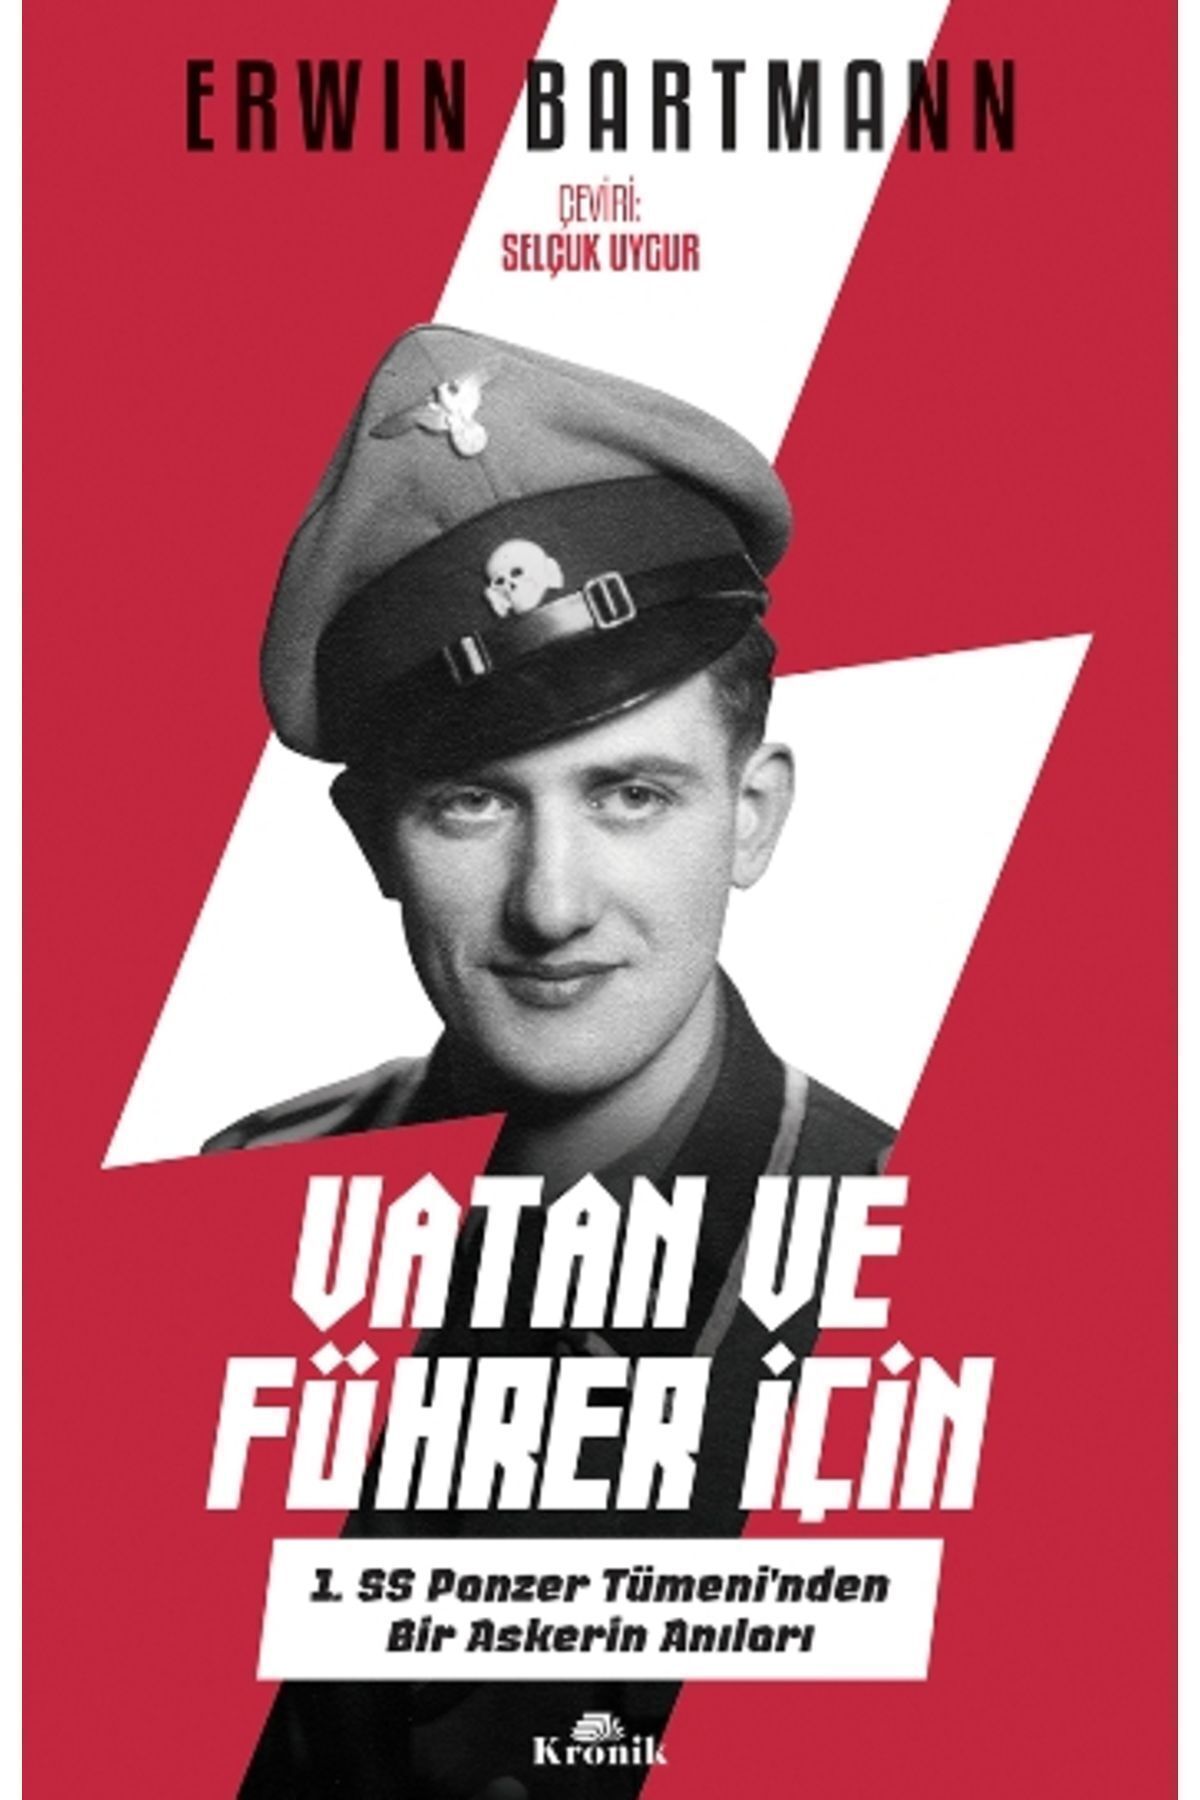 Kronik Kitap Vatan Ve Führer Için - 1. Ss Panzer Tümeni'nden Bir Askerin Anıları